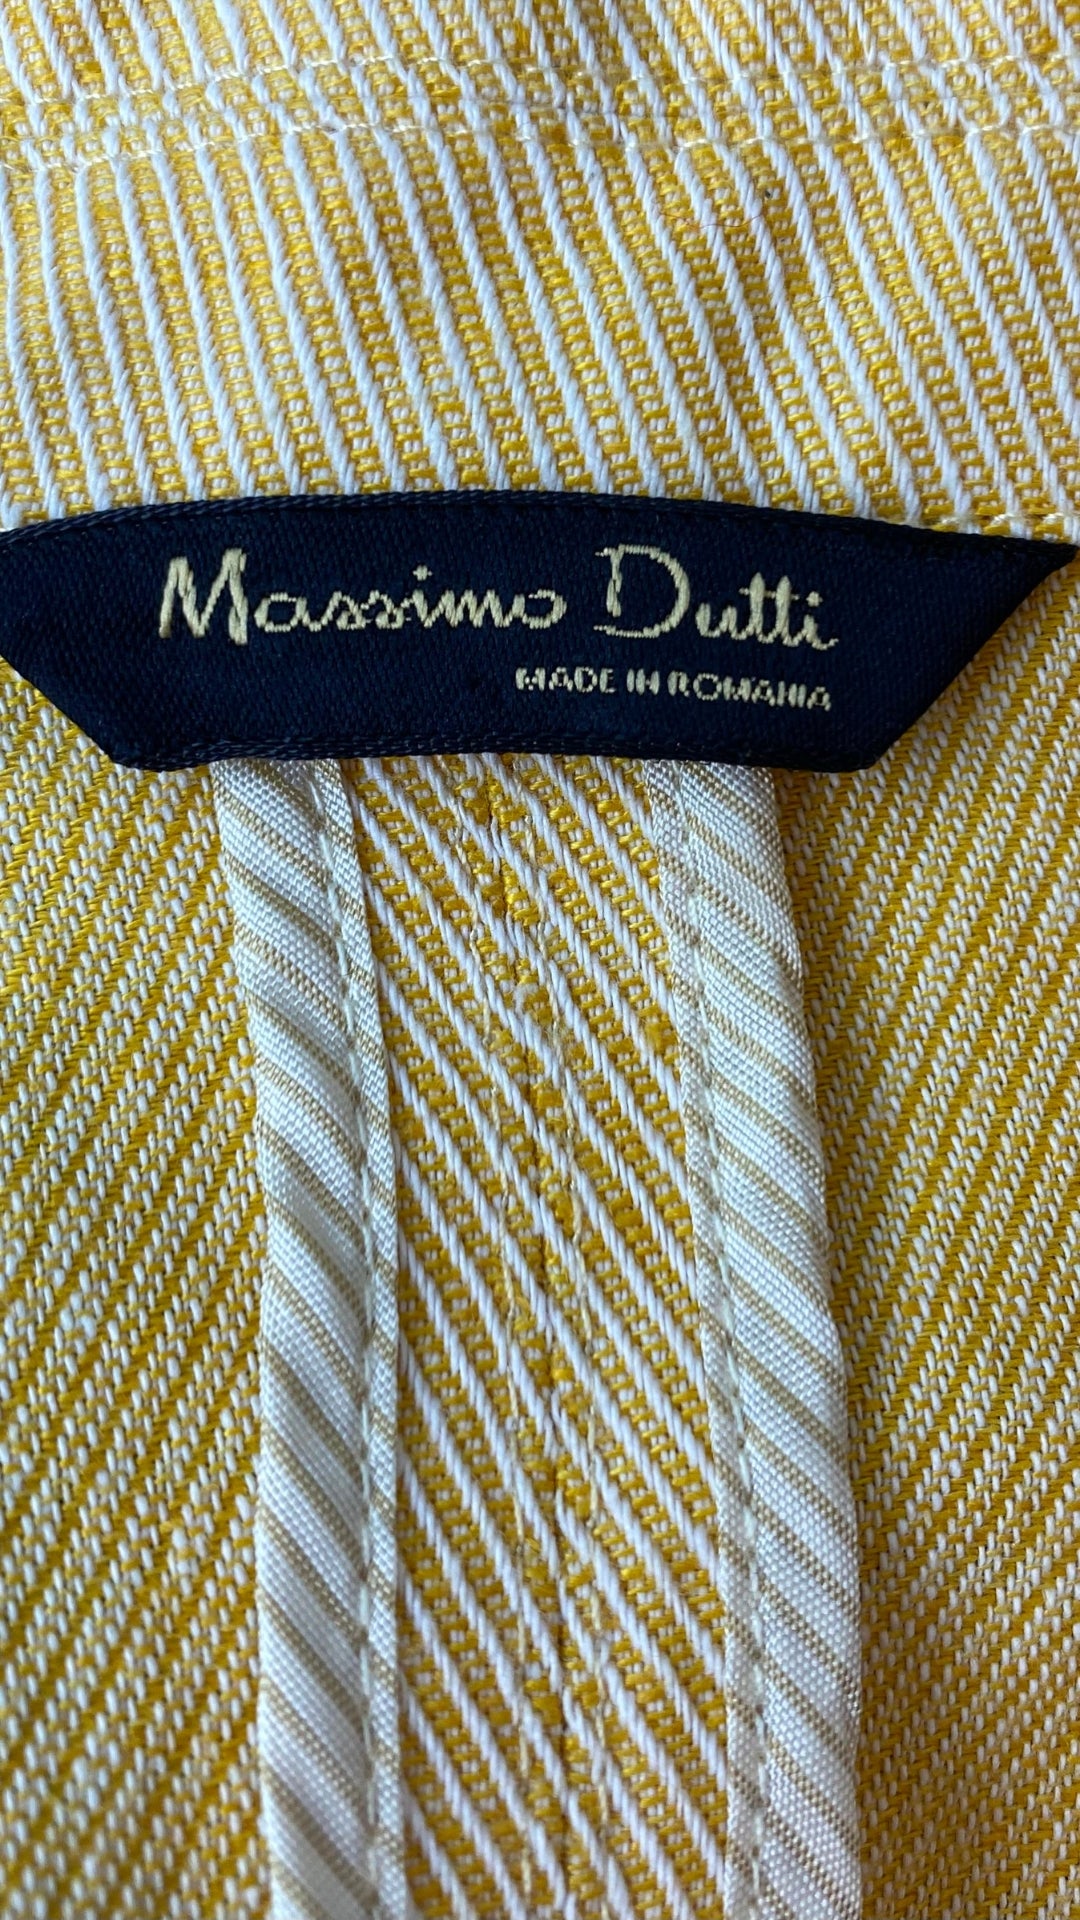 Blazer jaune doux mélange de lin Massimo Dutti, taille 8/s. Vue de l'étiquette de marque.